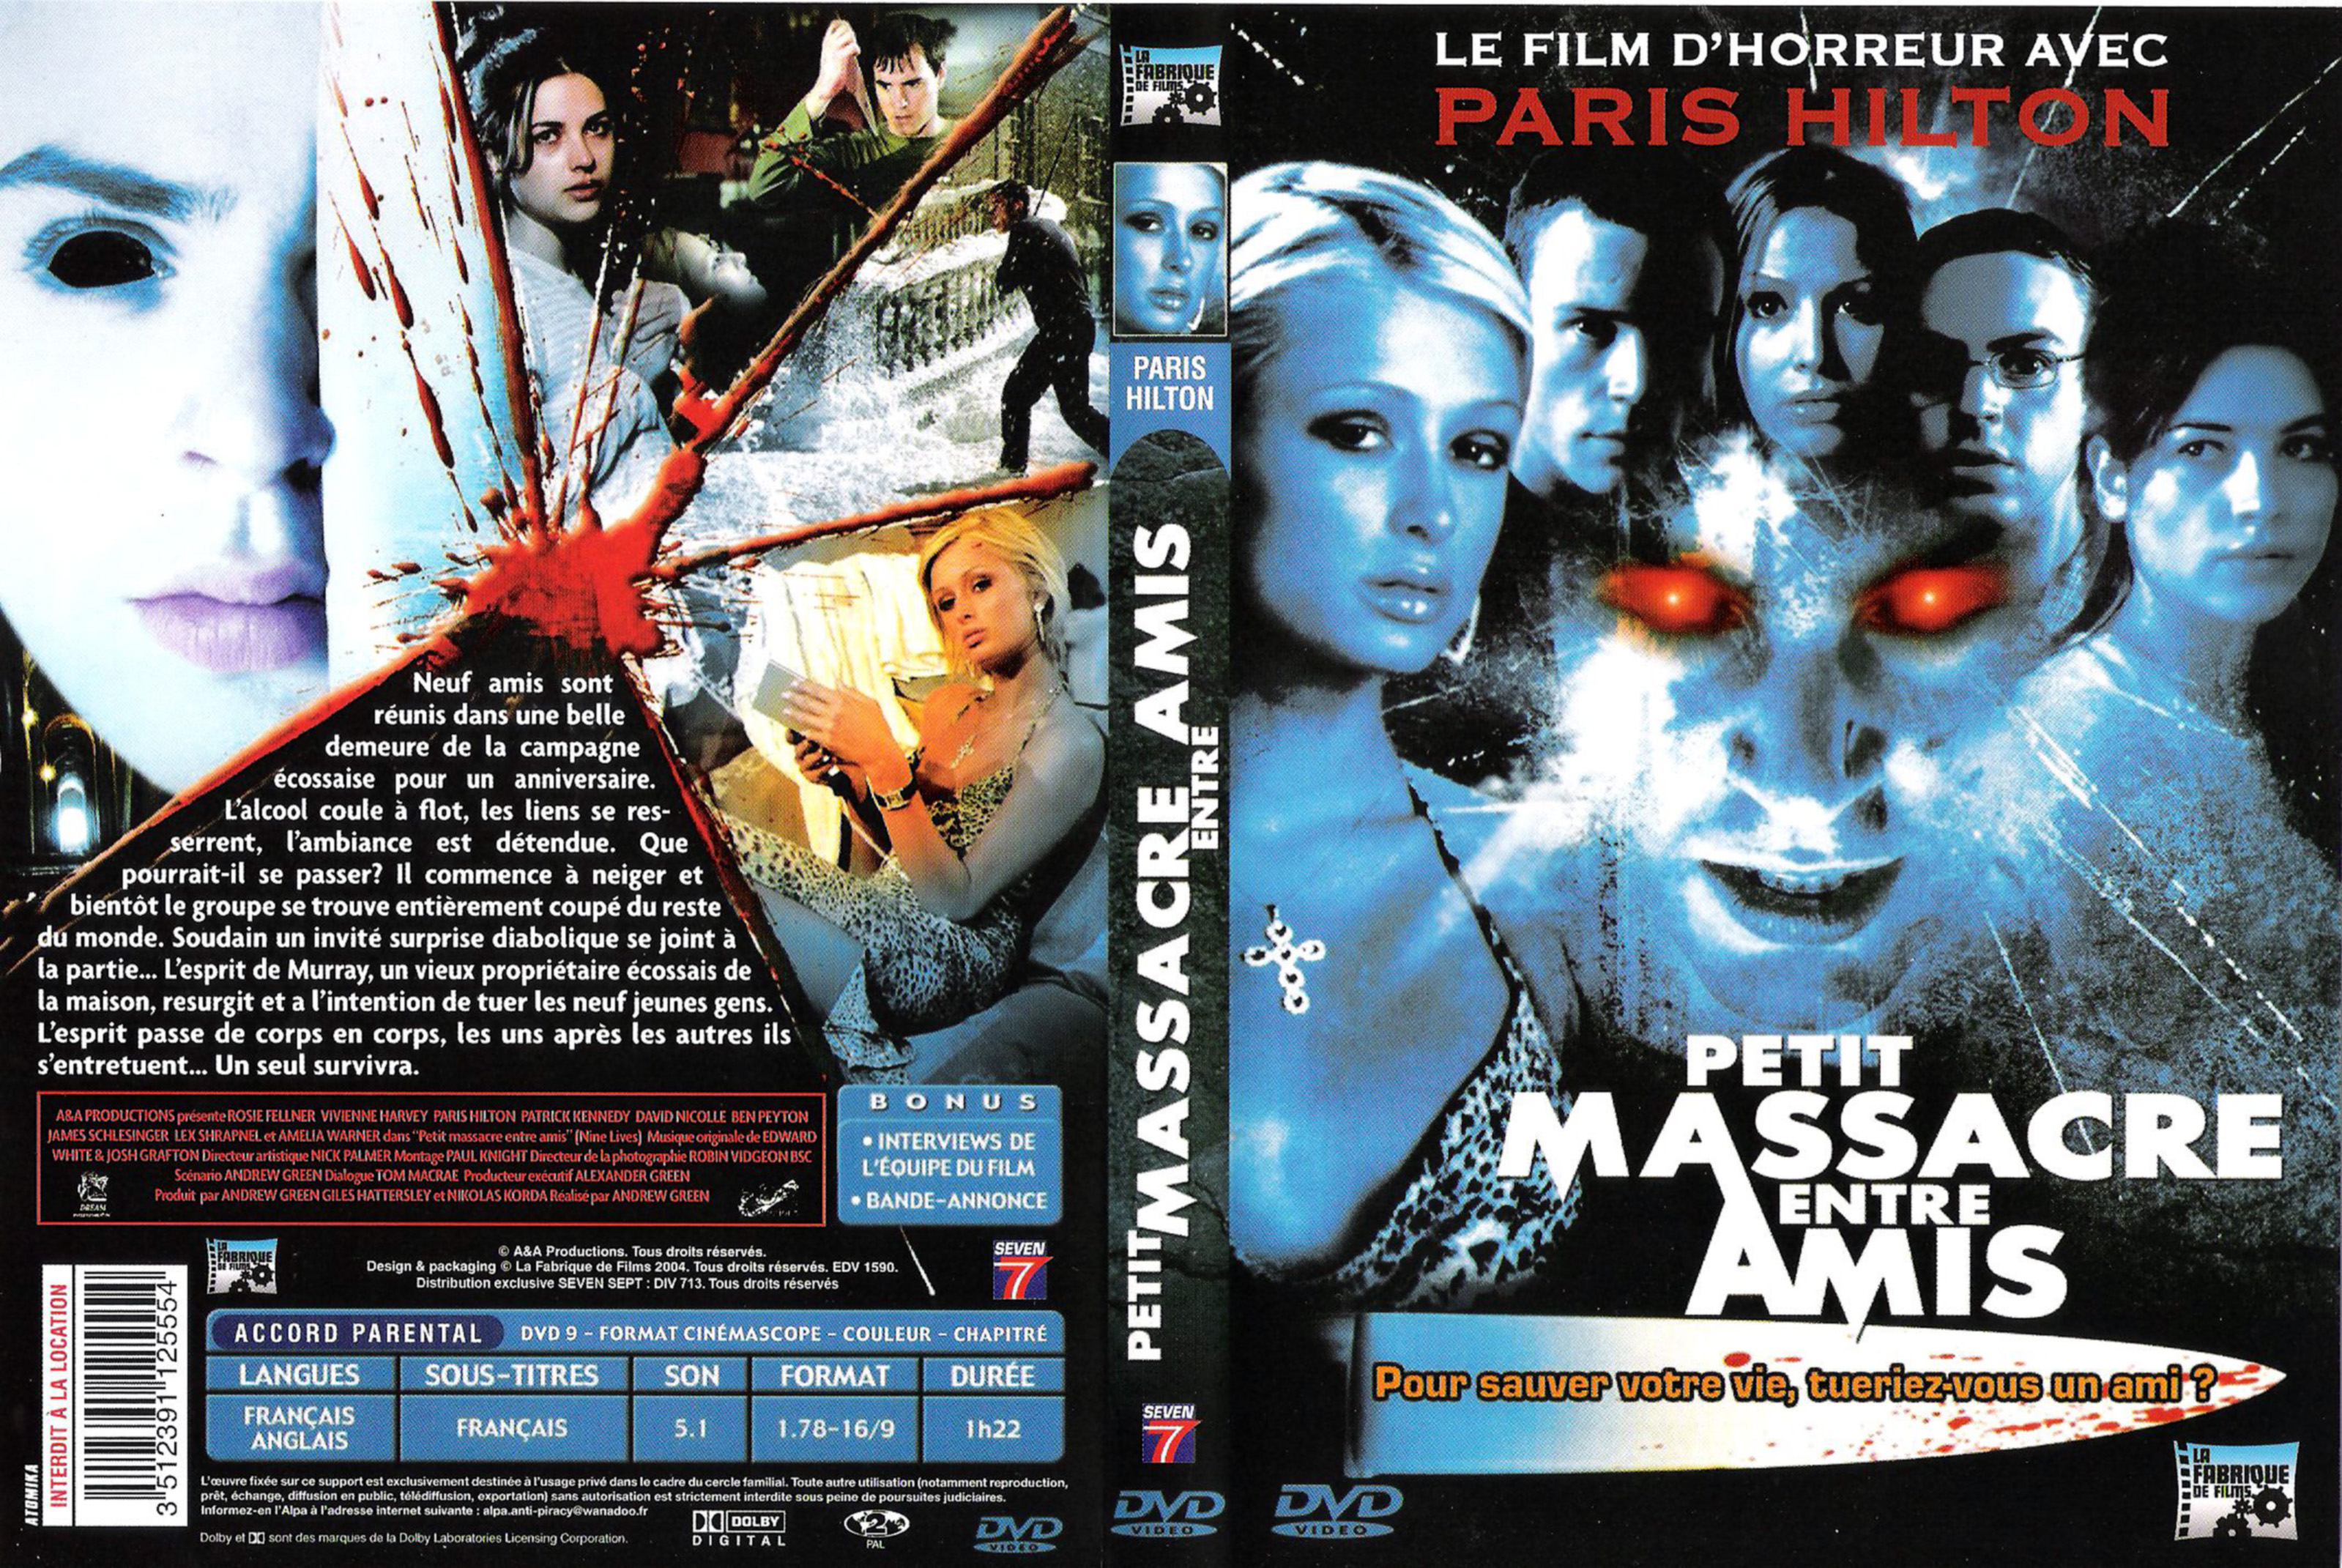 Jaquette DVD Petit massacre entre amis v2